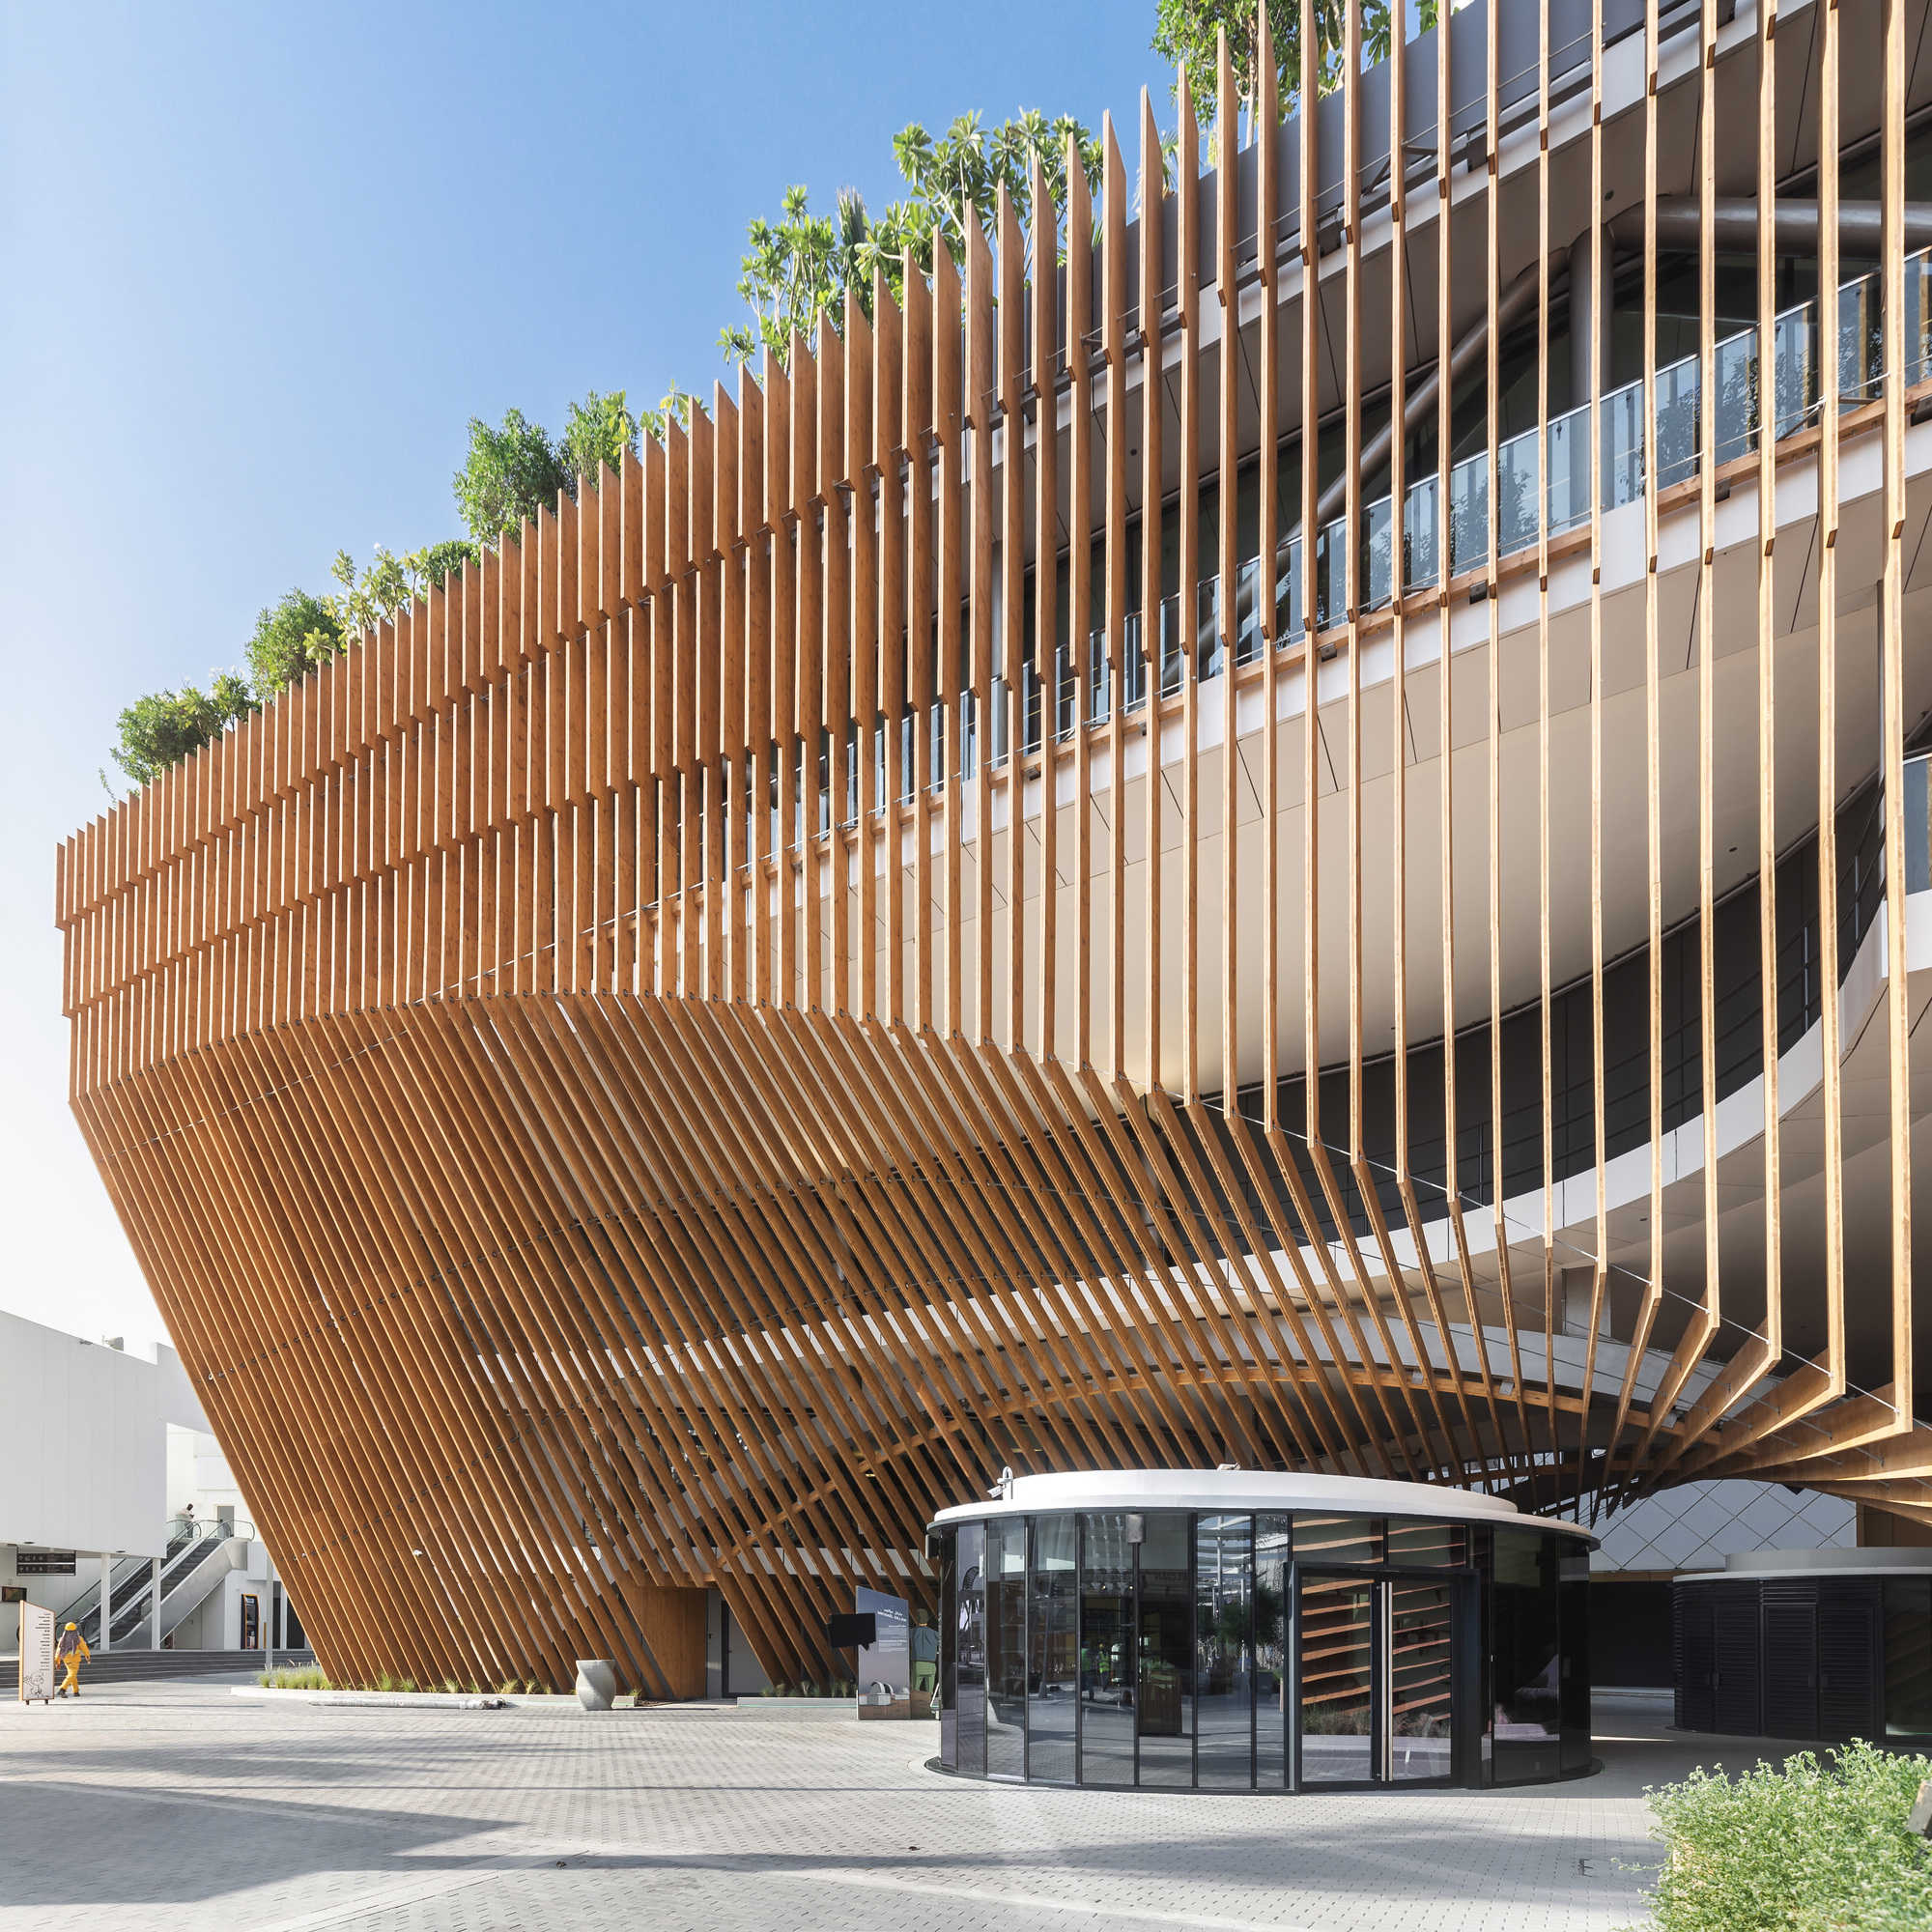 3_11-the-green-arch-belgian-pavilion-expo-2020-dubai-vincent-callebaut-architectures.jpg